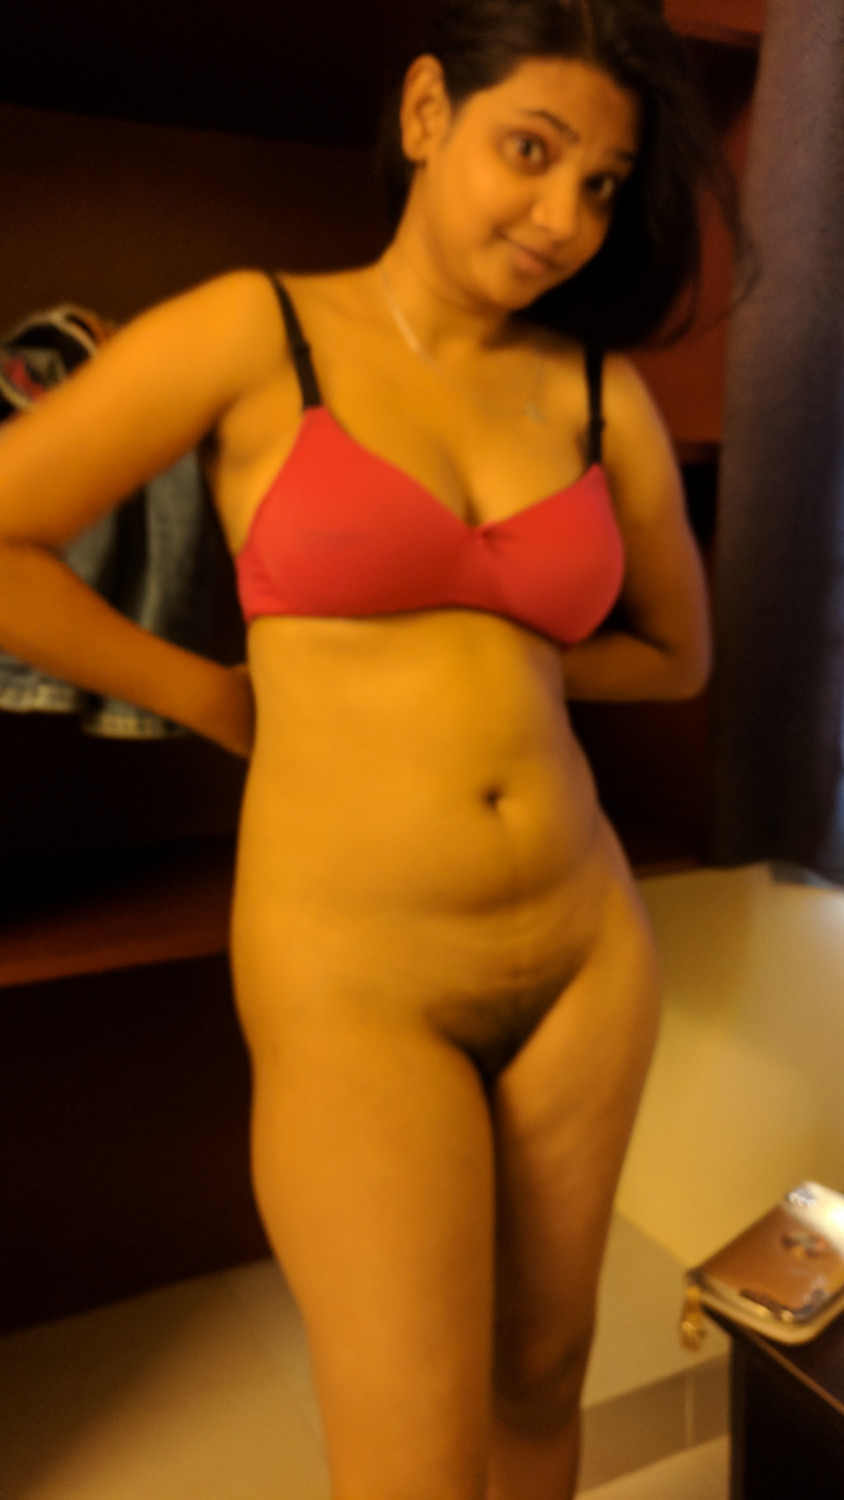 Bank hot girl nude 2